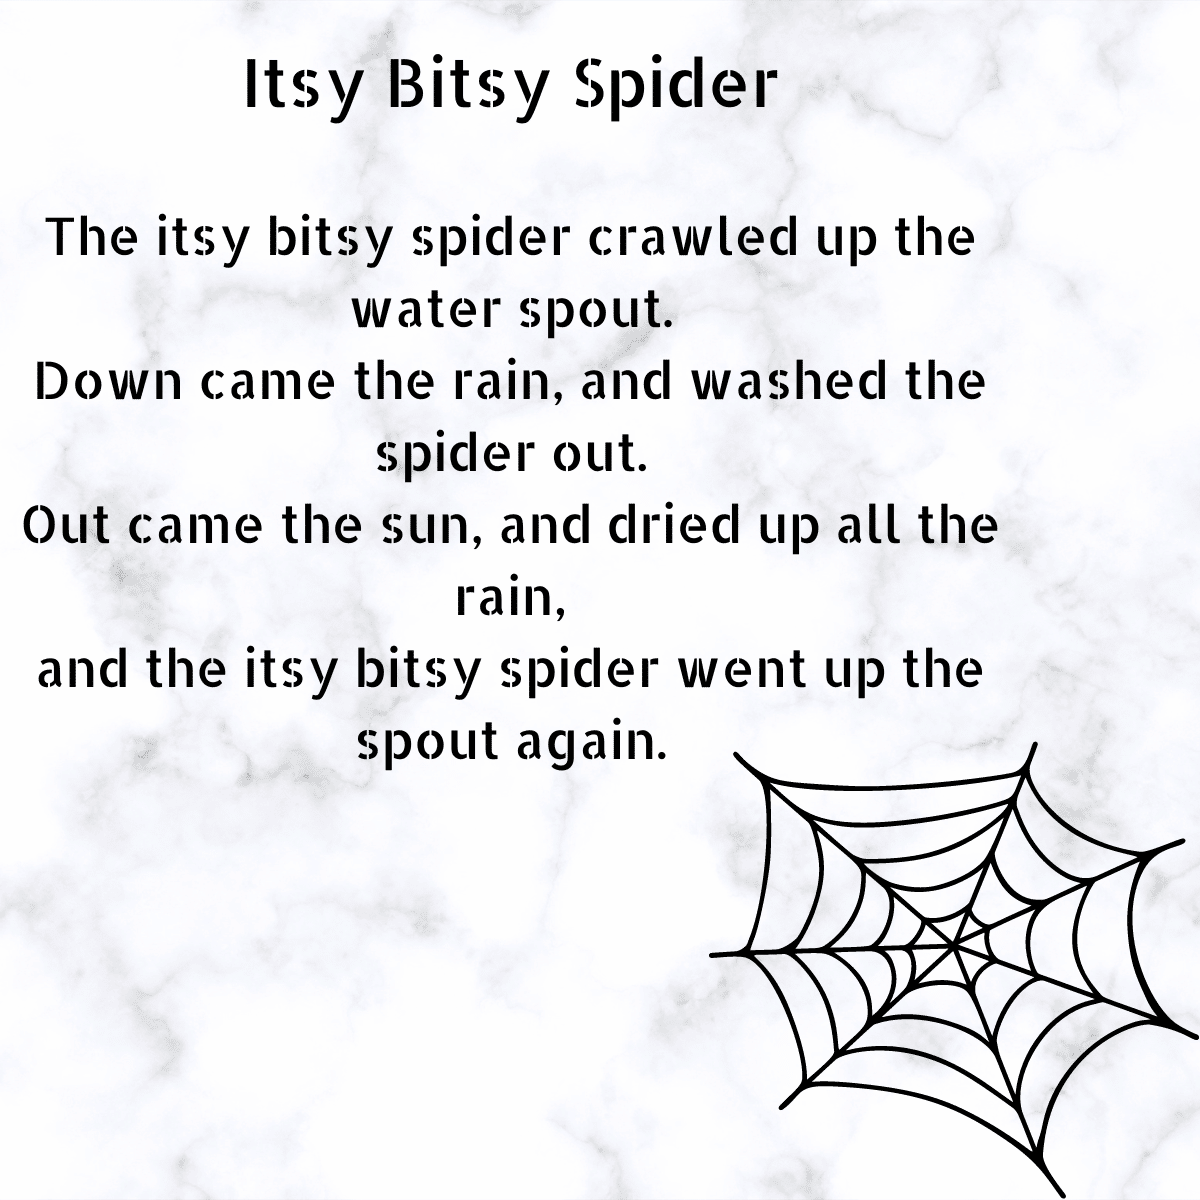 Itsy Bitsy Spider lyrics